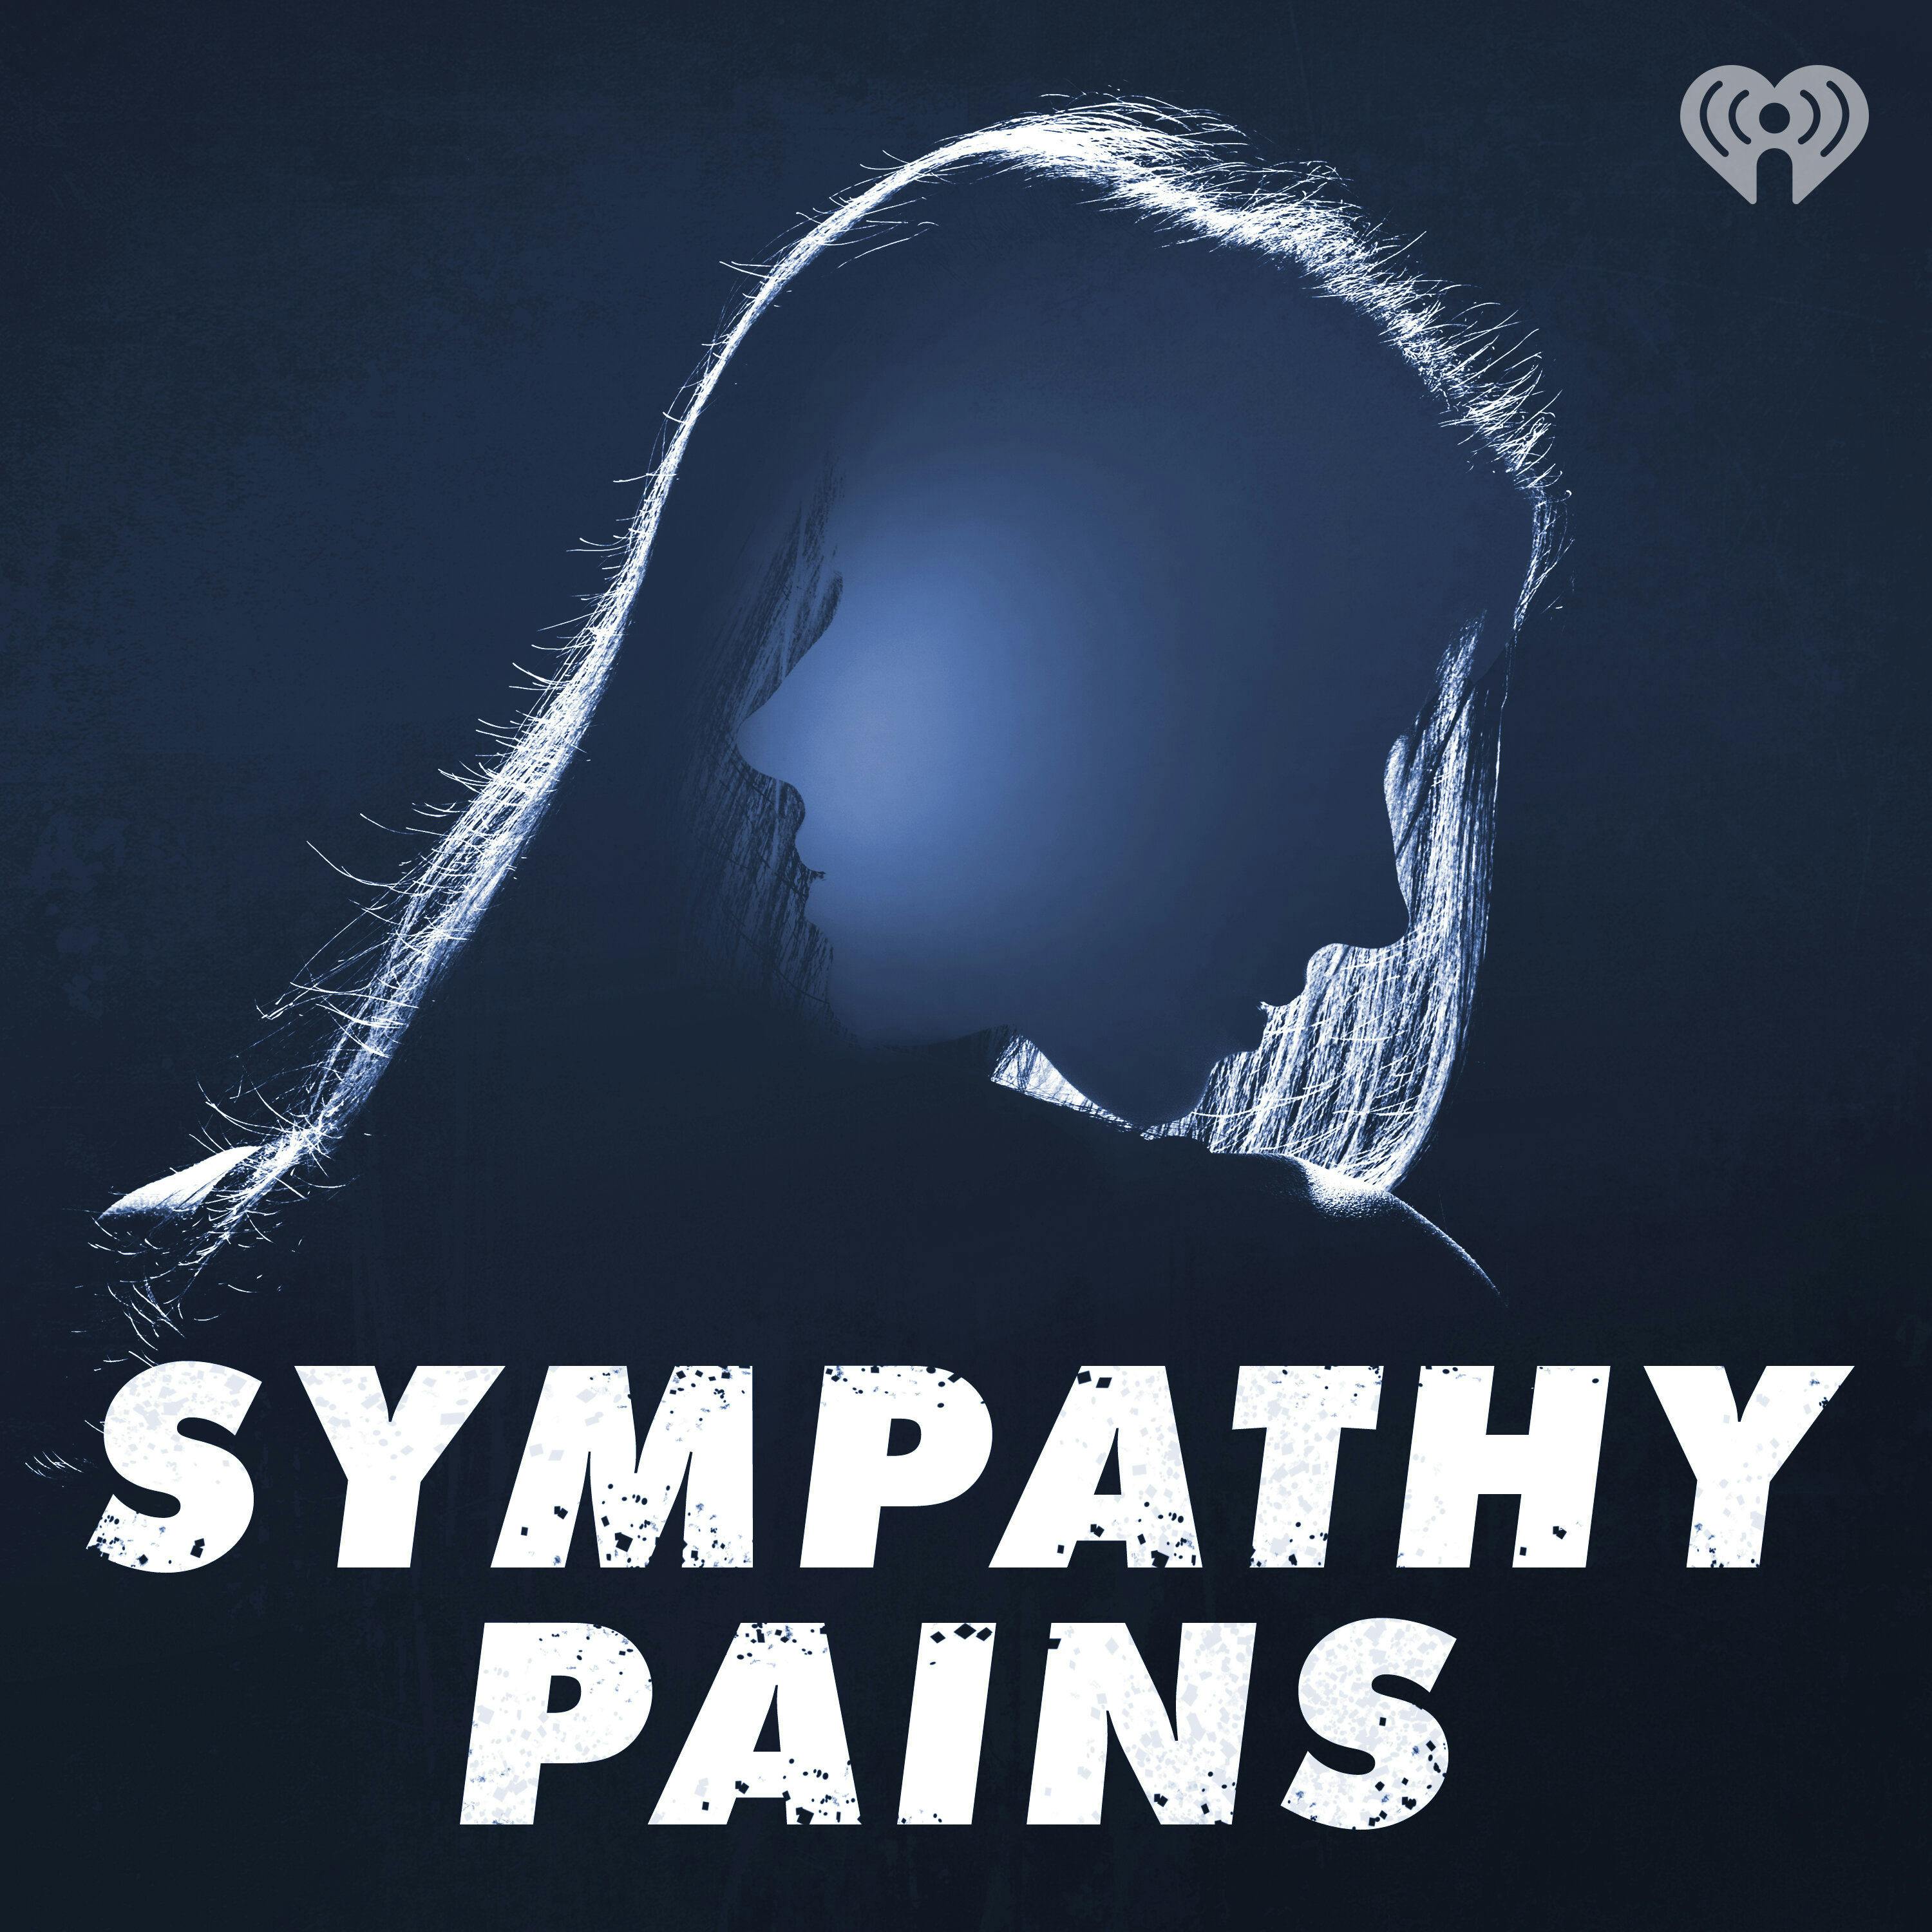 Sympathy Pains